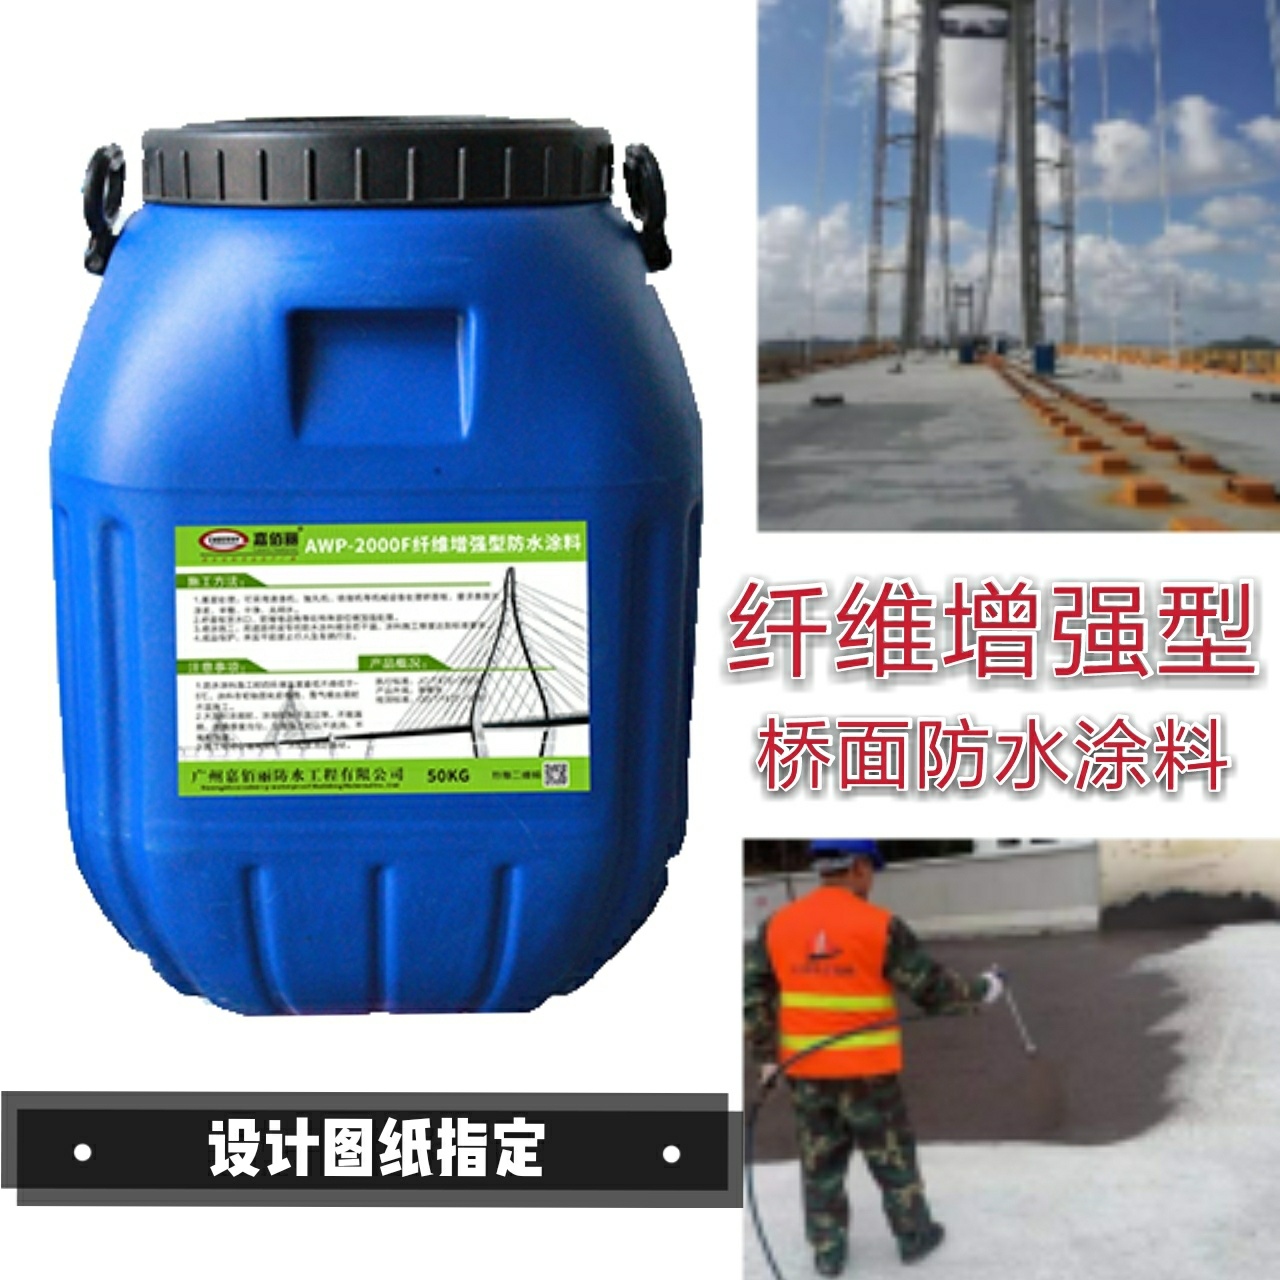 纤维增强型桥面粘结防水涂料 交通项目要求防水层材料 厂家报价示例图8